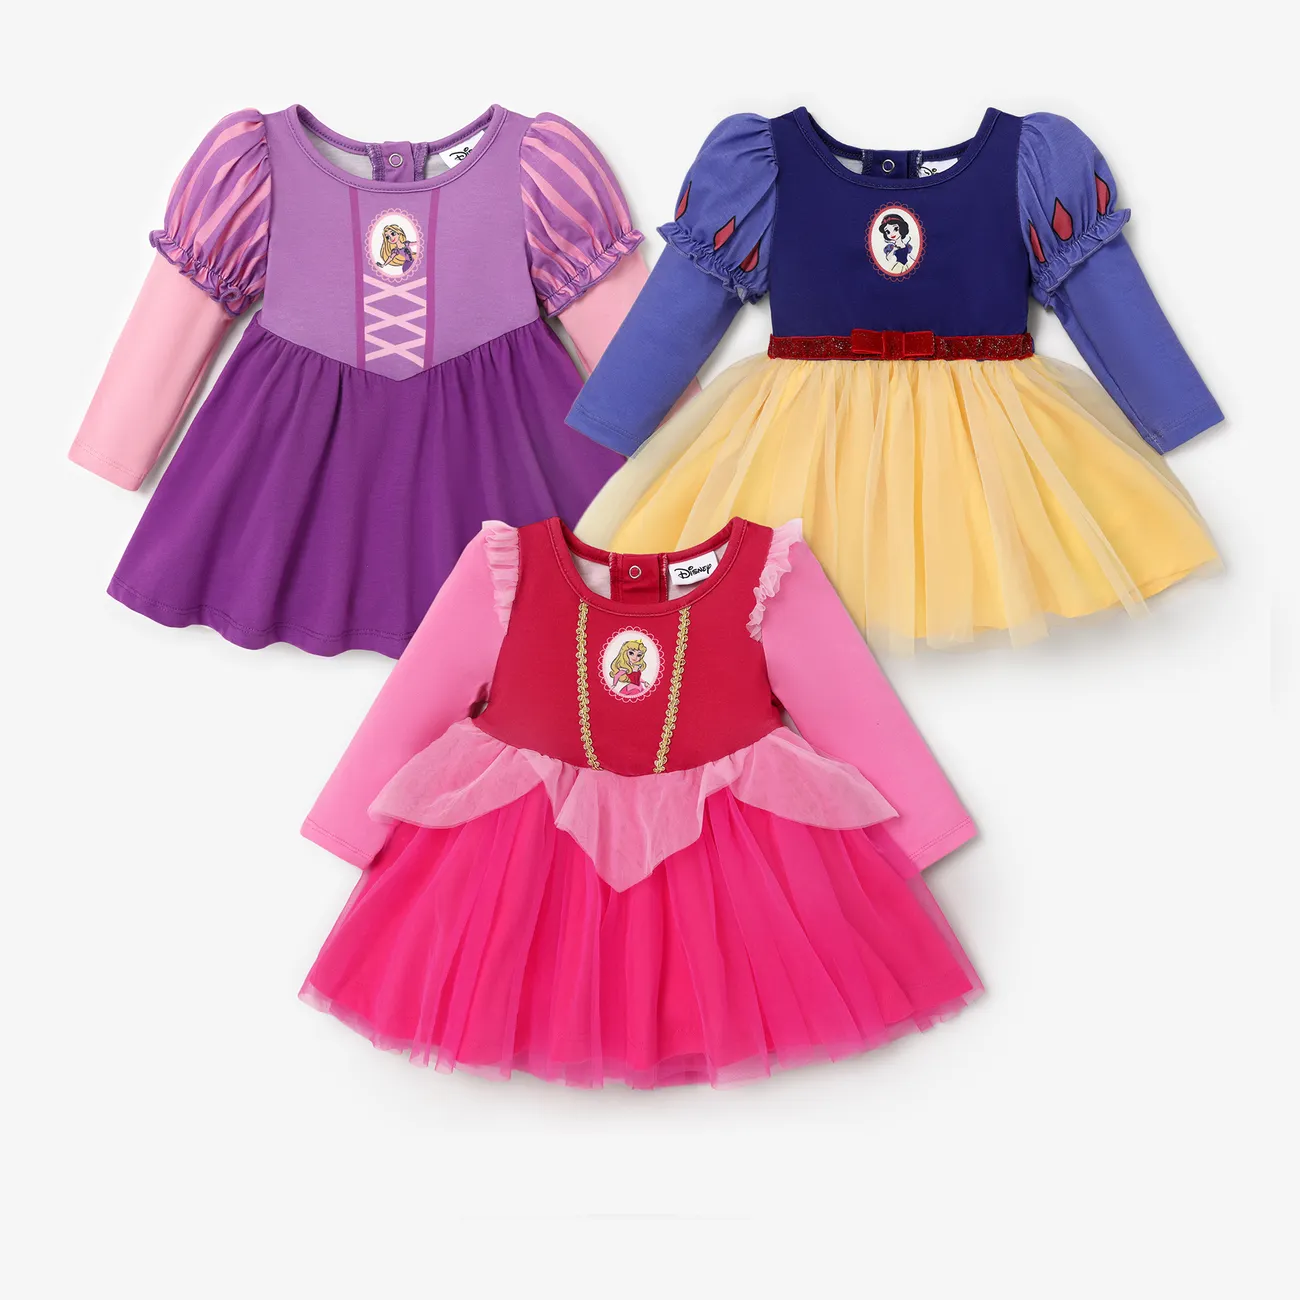 Disney Princess Baby/Toddler Girl Naia™ Character Print Cosplay Long-sleeve Dress Deep Blue big image 1